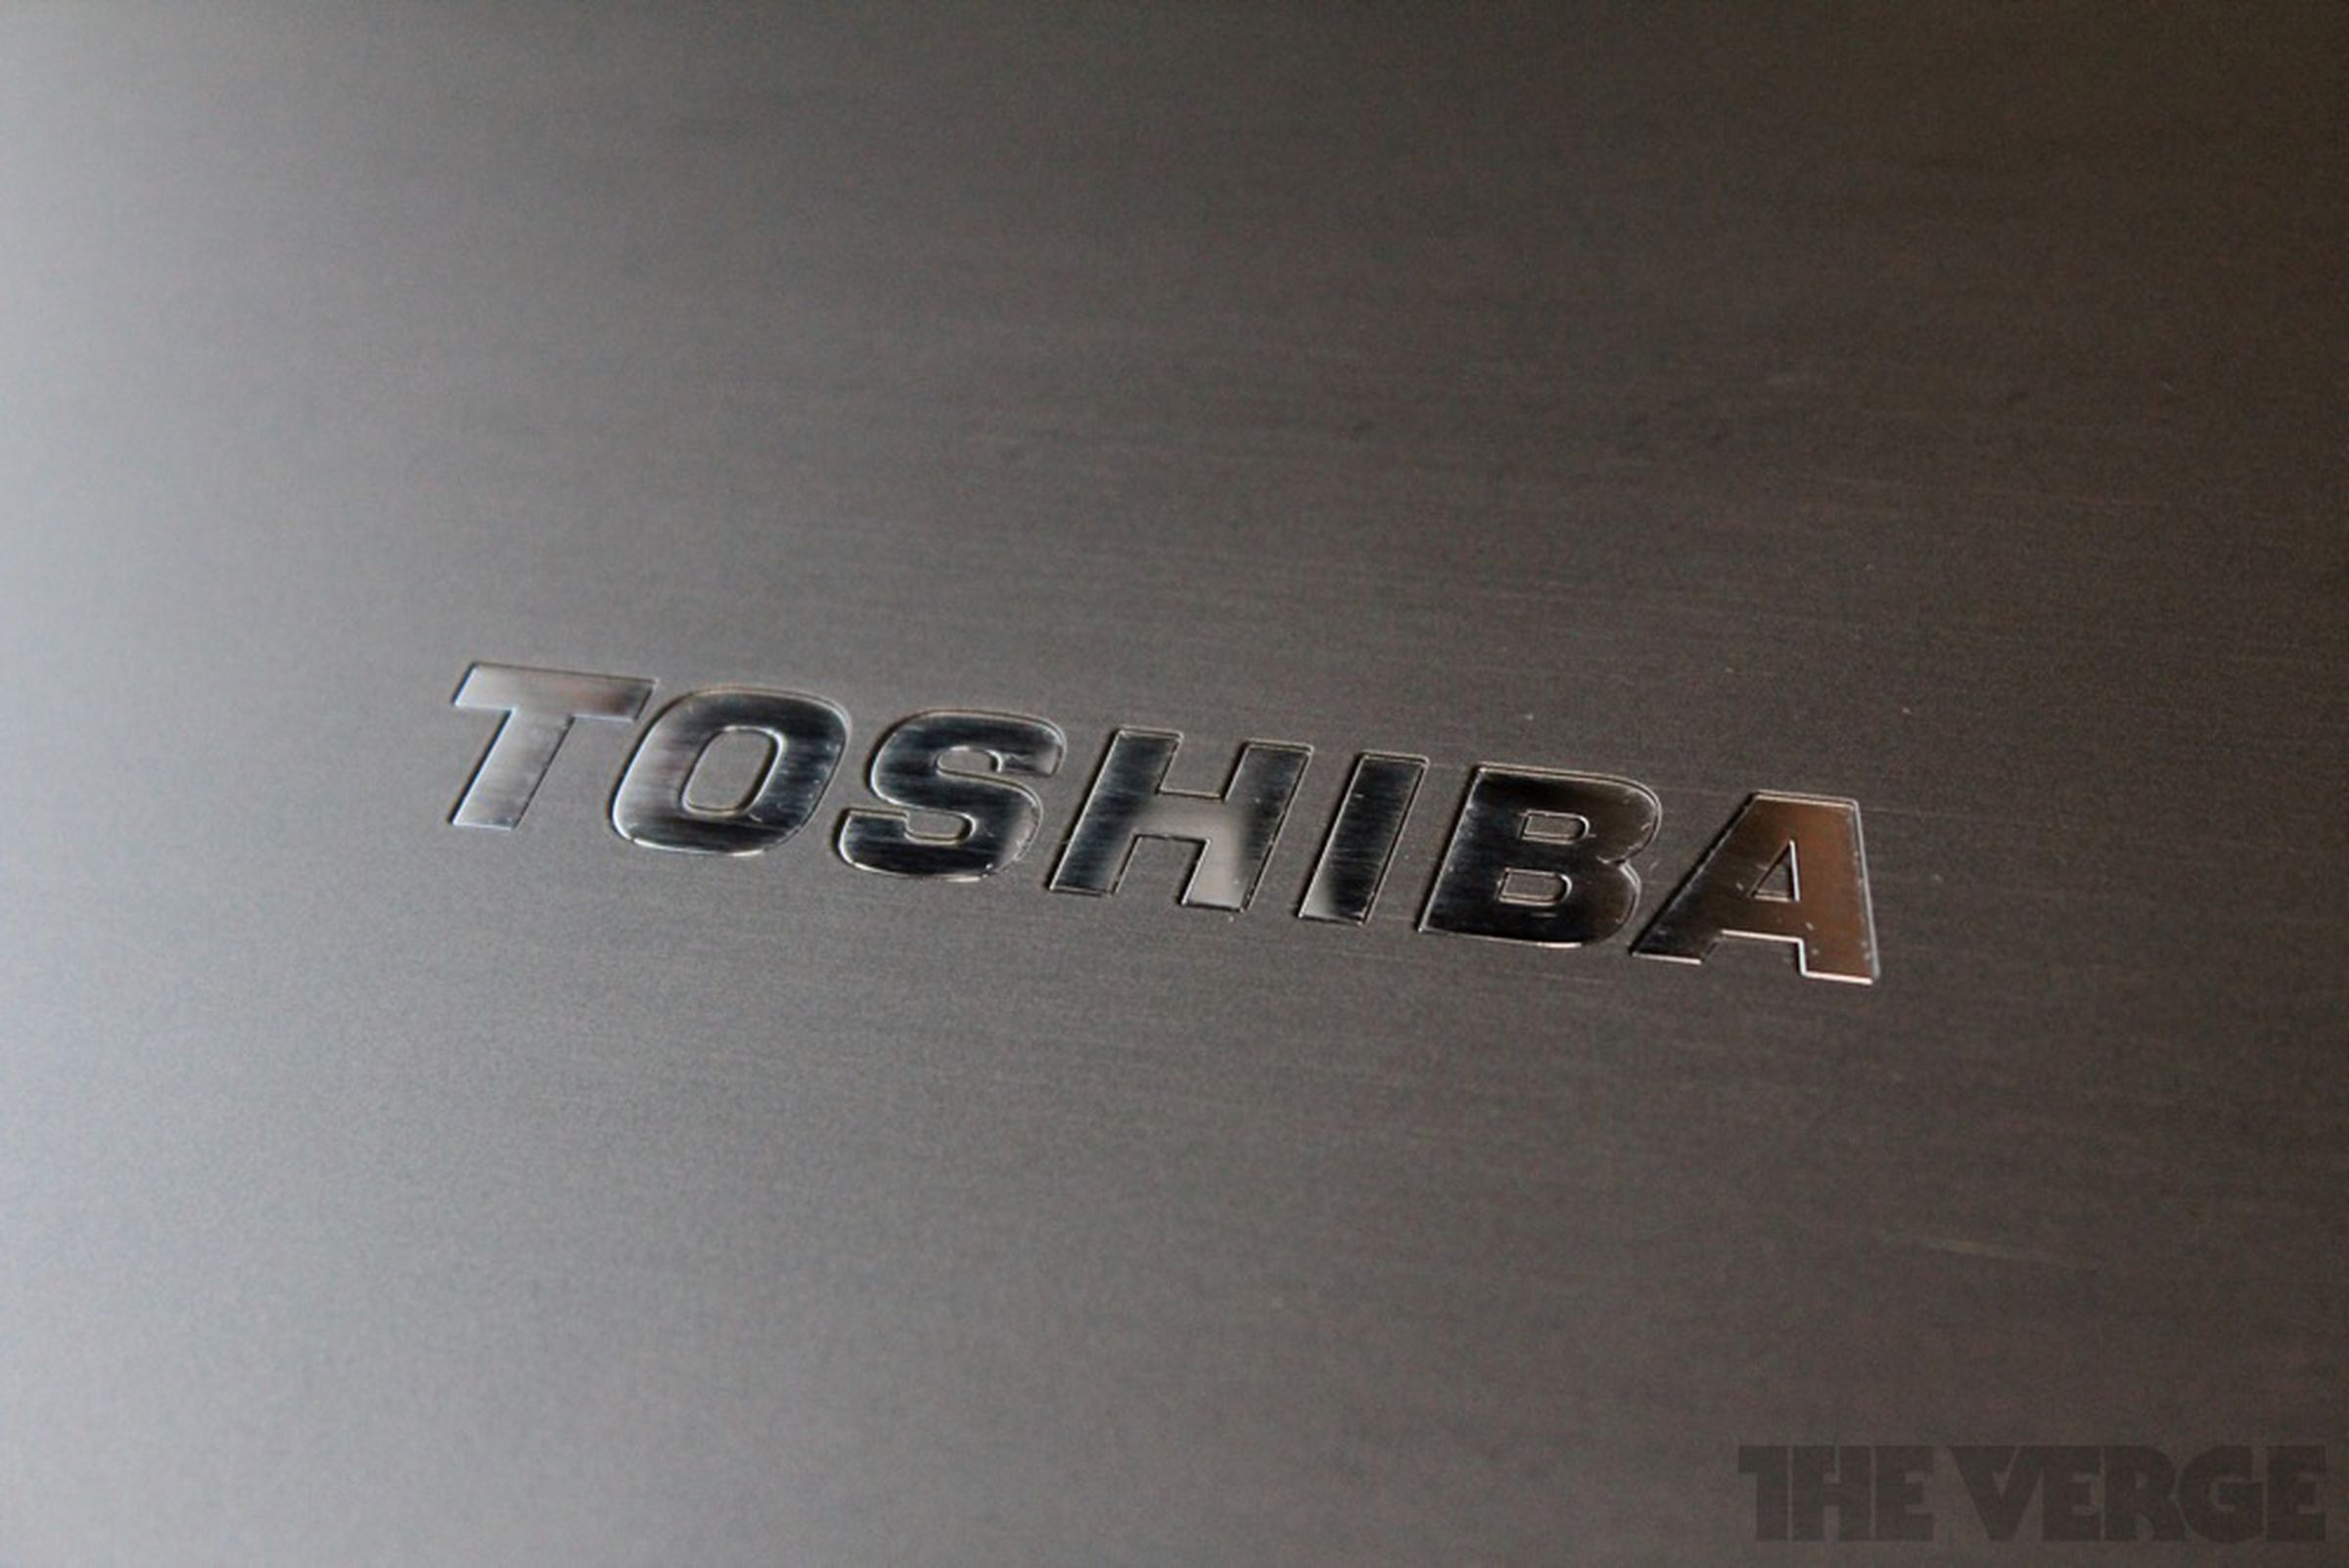 Toshiba Portege Z835 review photos